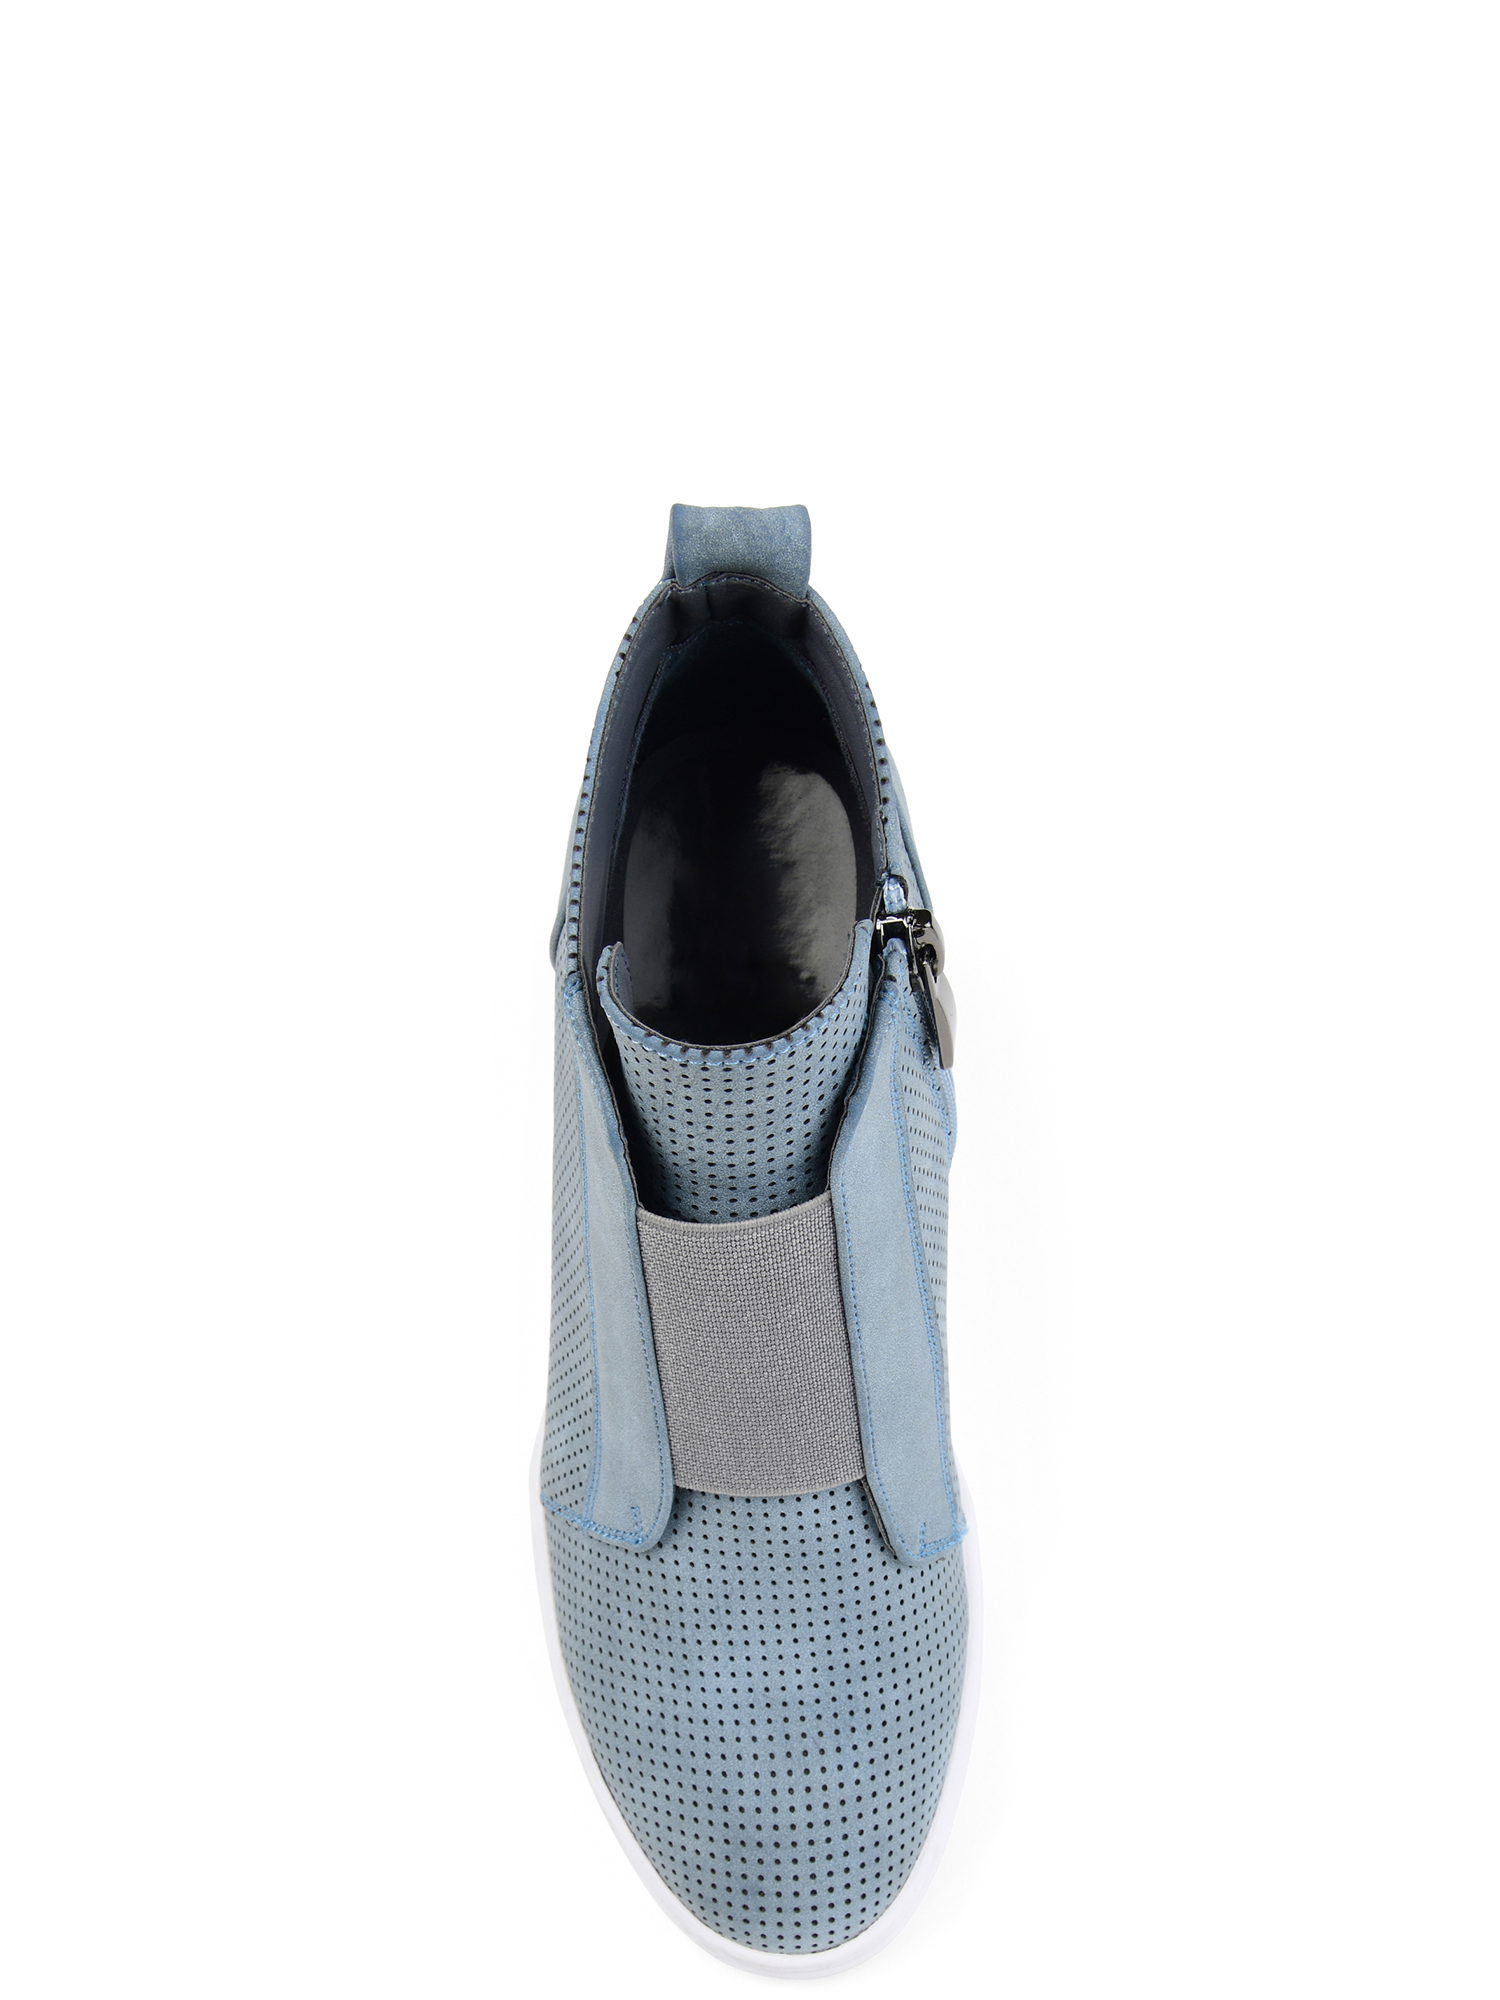 Brinley Co Womens Athleisure Laser-cut Side-zip Sneaker Wedges - image 3 of 7